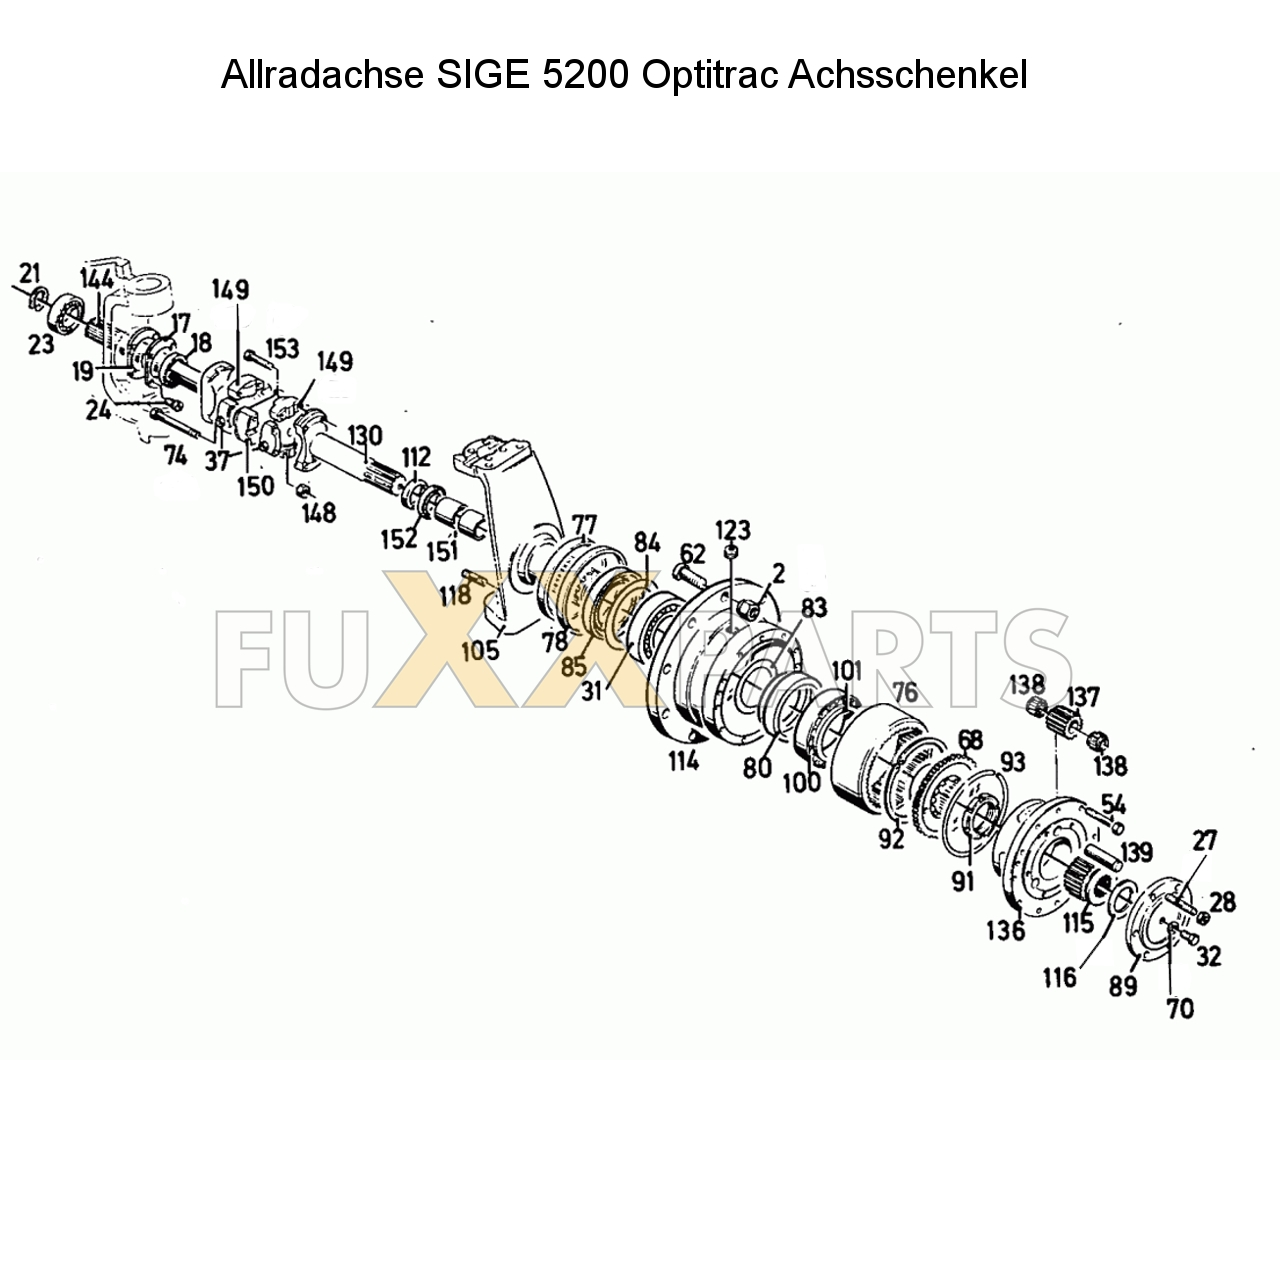 D 10006 Allradachse SIGE 5200 Optitrac Achsschenkel